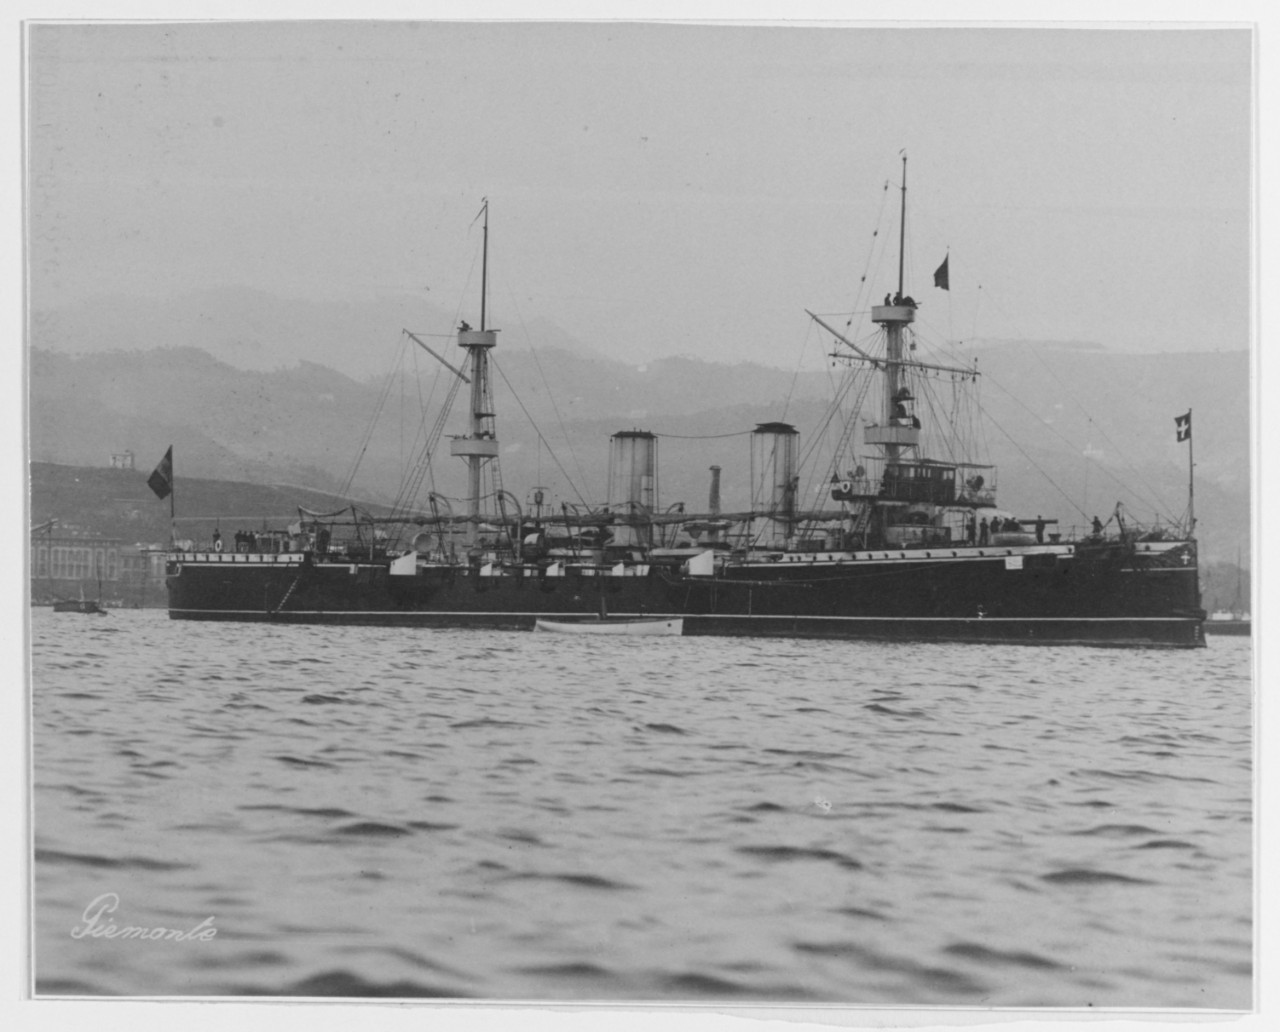 PIEMONTE (Italian Protected Cruiser)